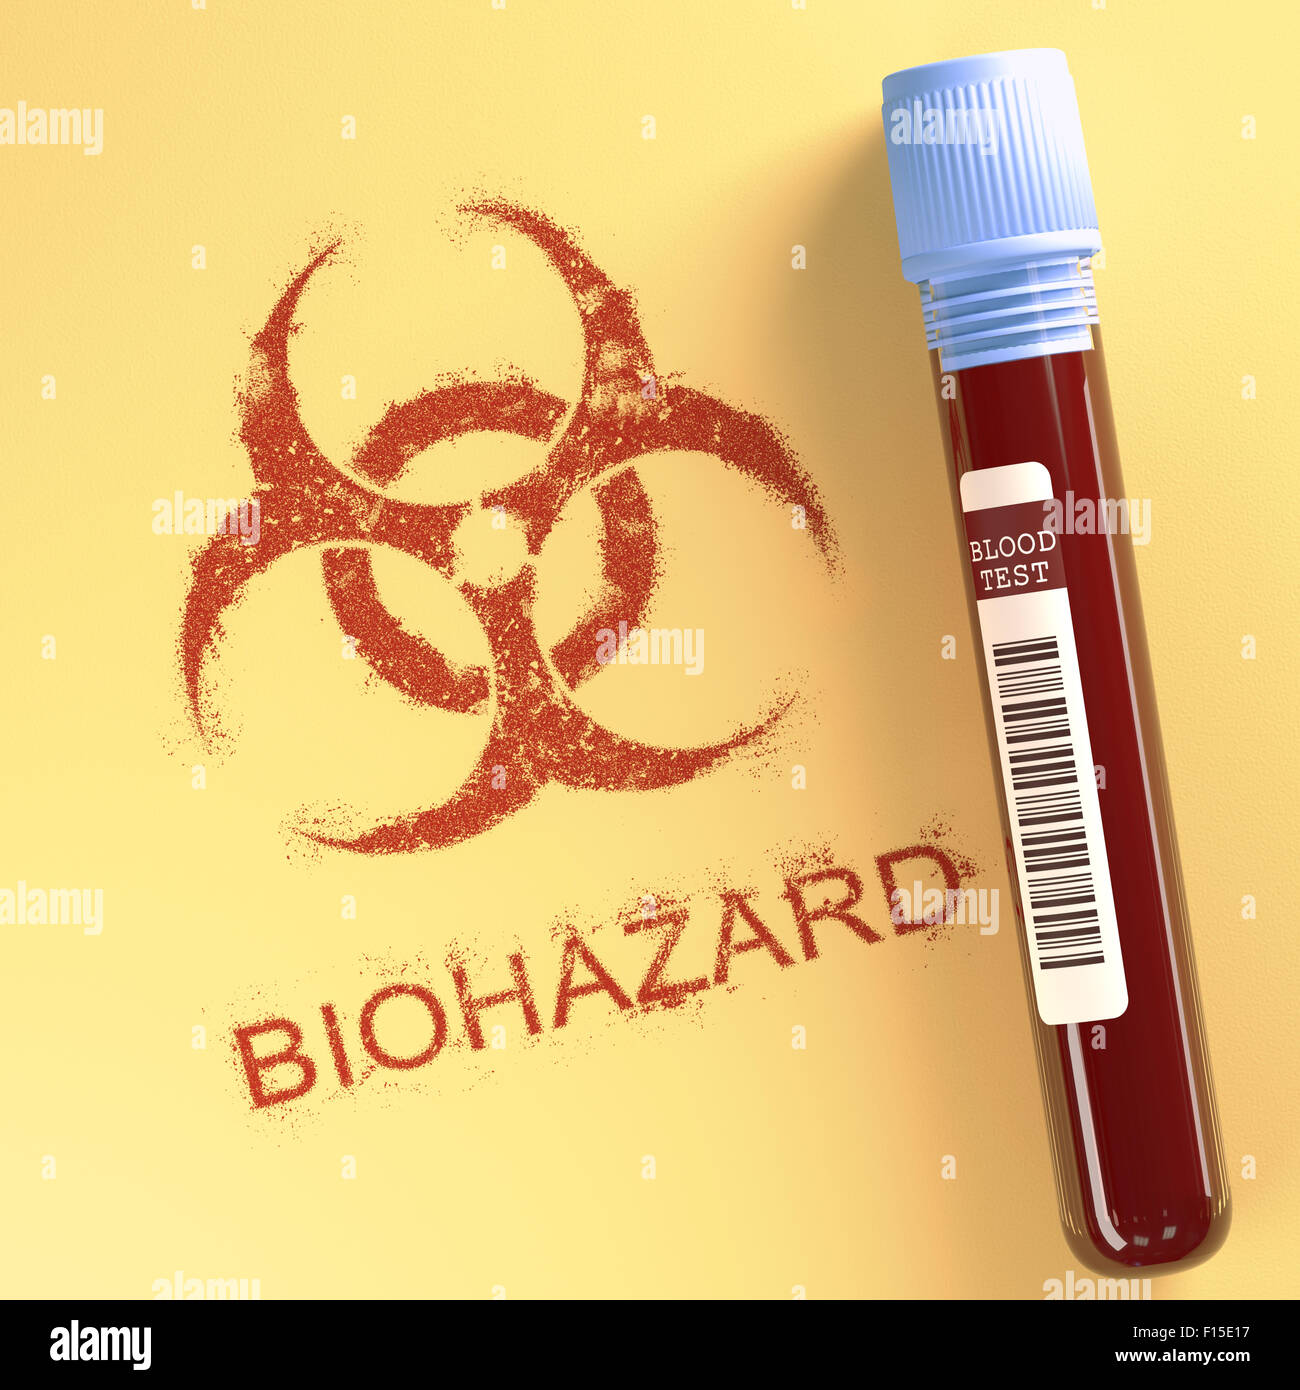 Tubo di prova con il sangue contaminato. Il simbolo sulla carta che indica pericolo. Percorso di clipping incluso. Foto Stock